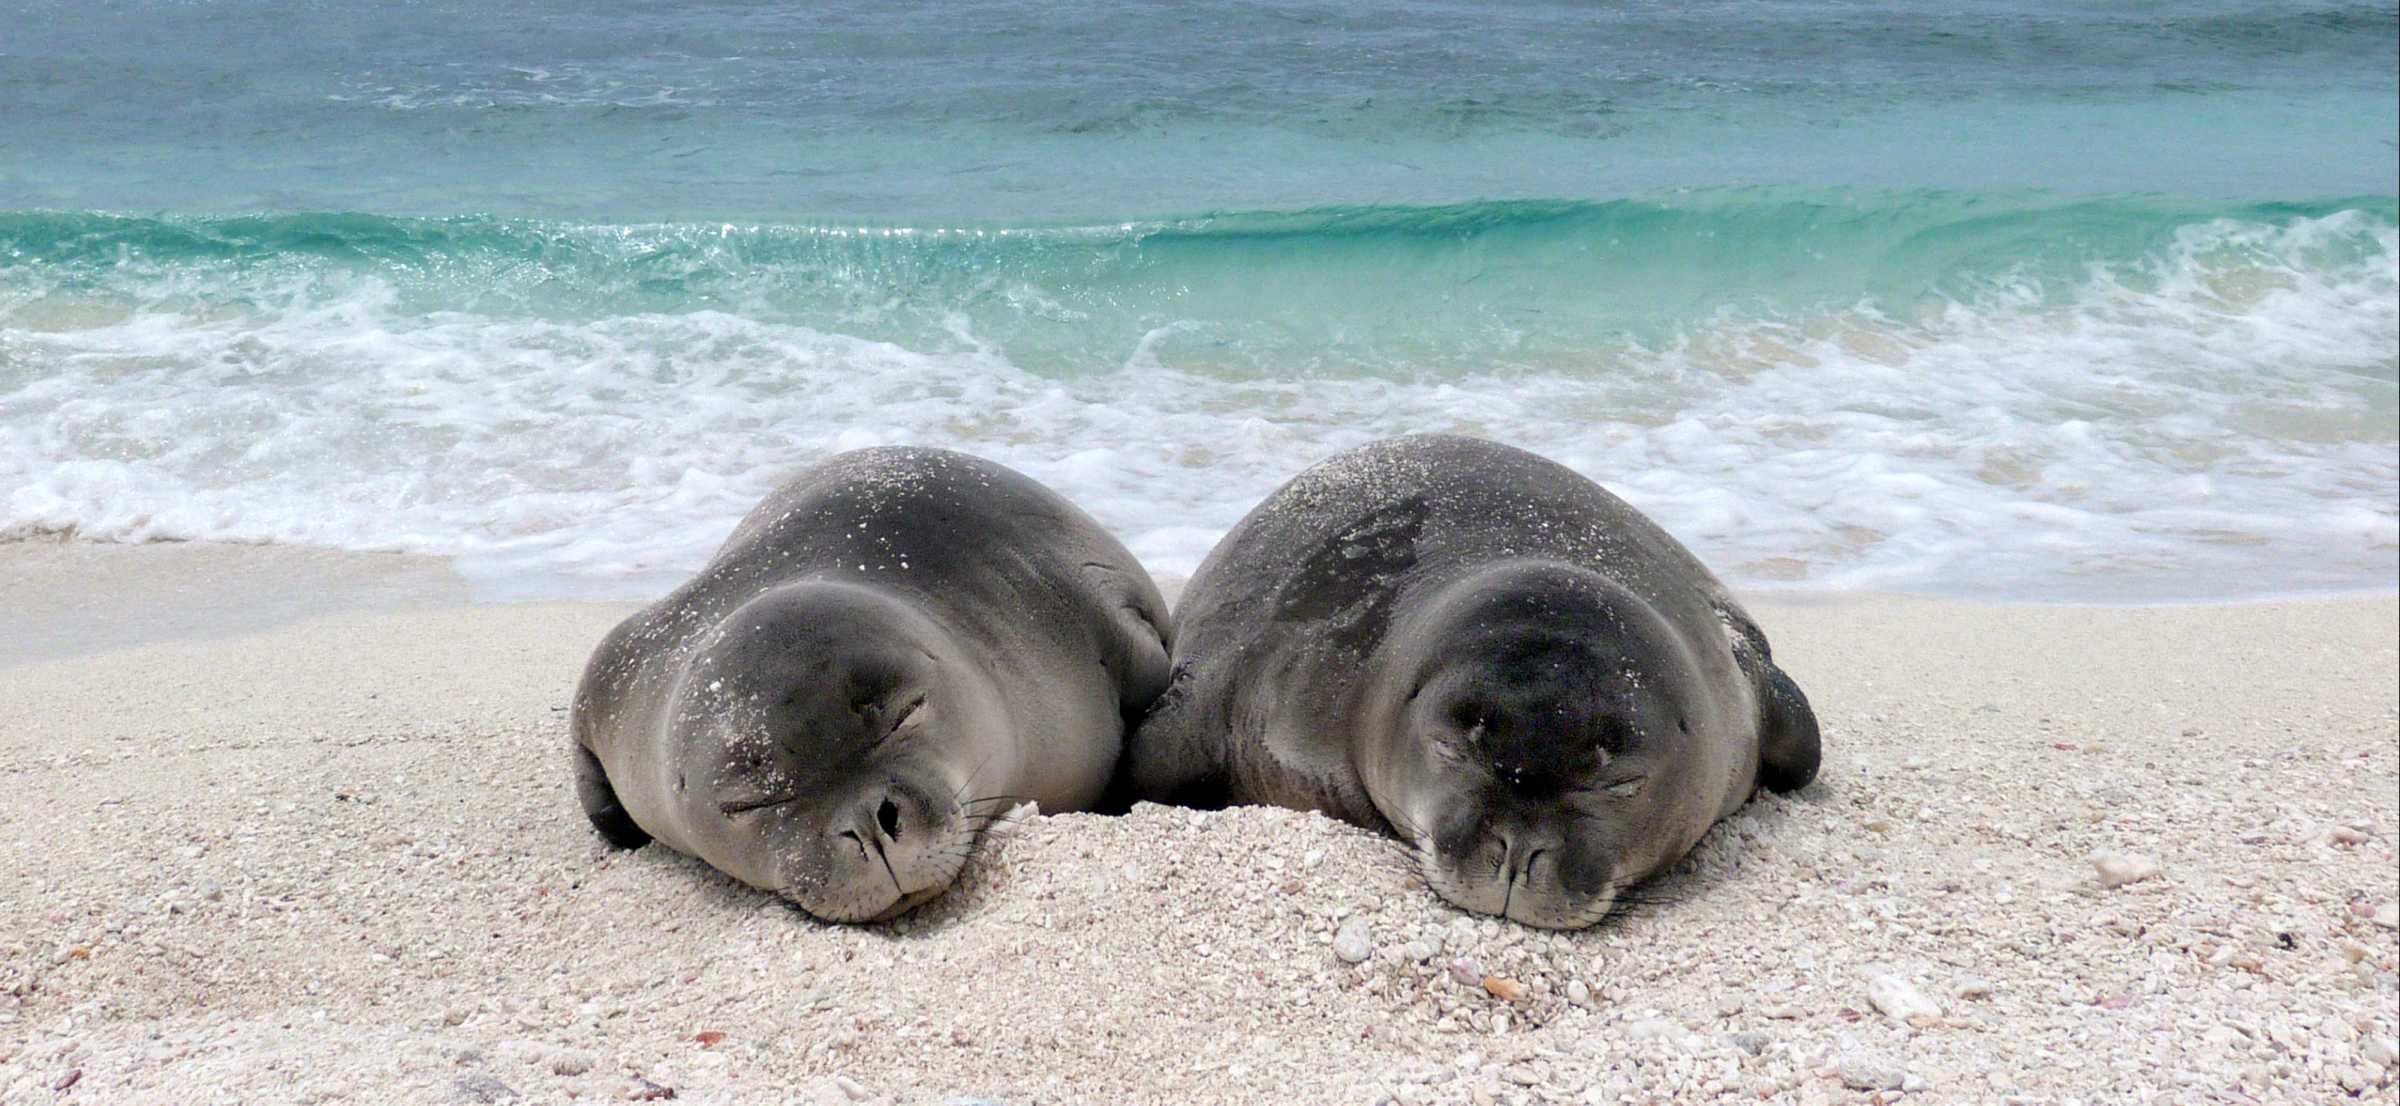 The Marine Mammal Center | Hawaiian Monk Seal Conservation